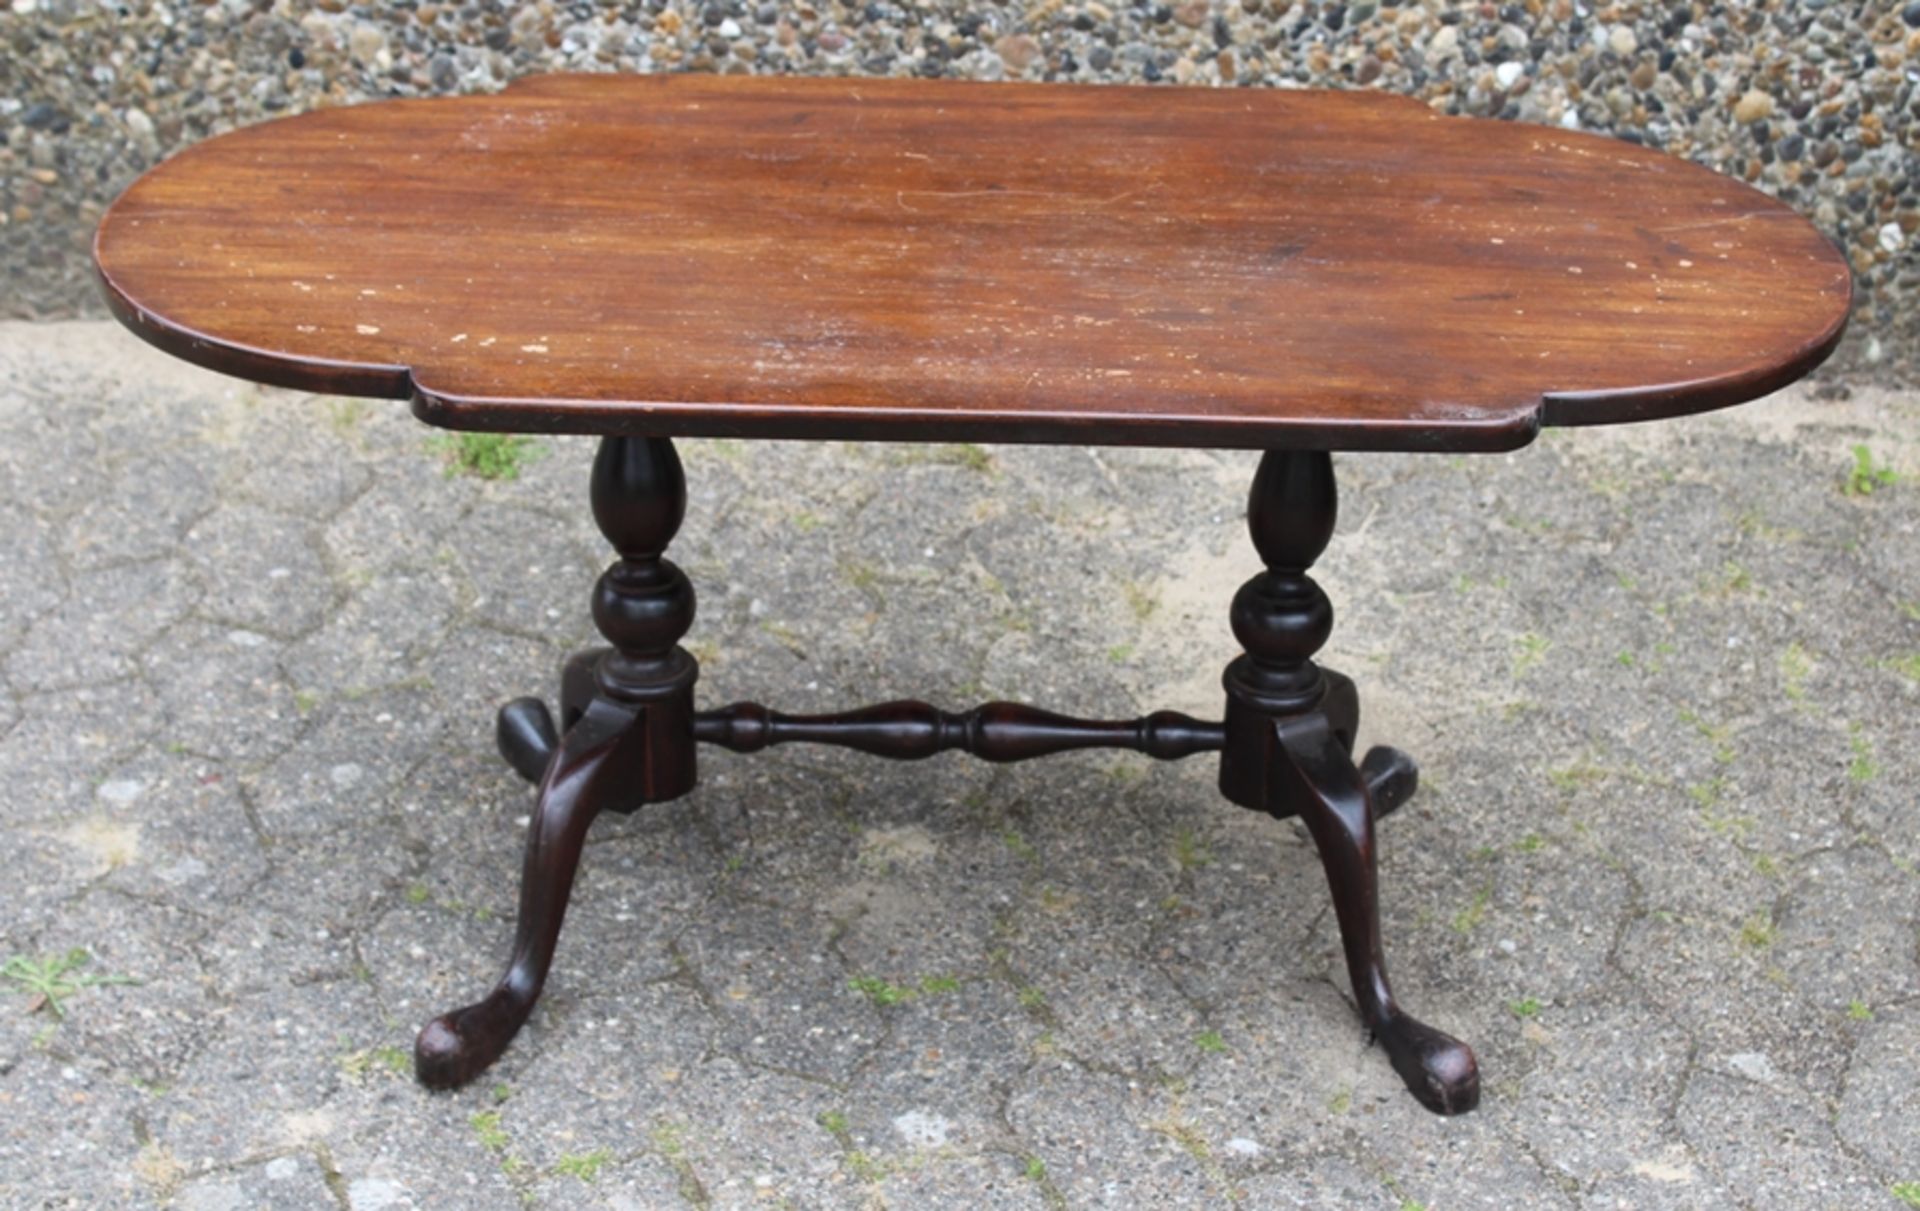 ovaler Tisch um 1900, Alters-u. Gebrauchsspuren, 1x Leimstelle gelöst, H-51cm B-108cm T-54,5cm.